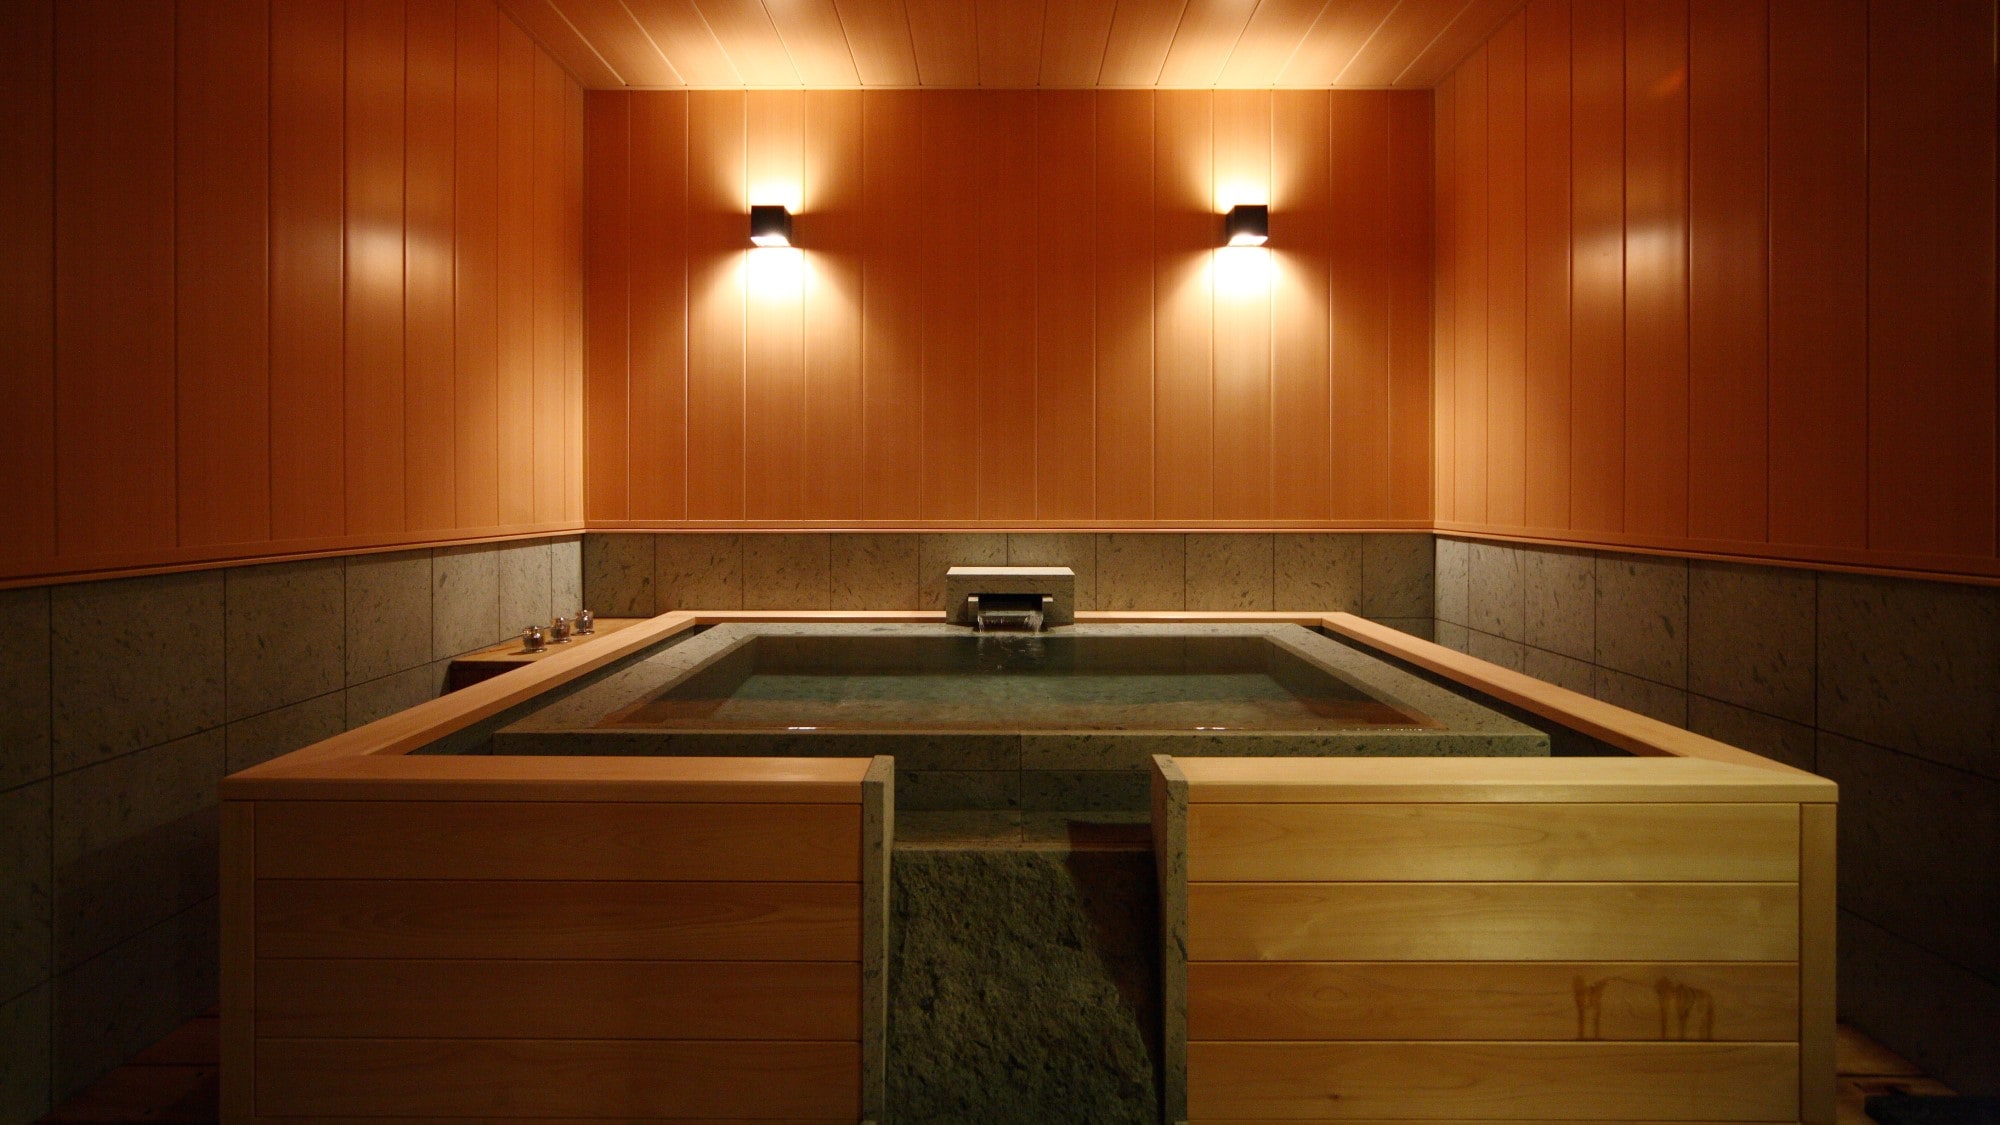 ☆ 스파·스위트 룸 “국화 만엽” 플랫 타입의 객실내 가족 목욕 이미지